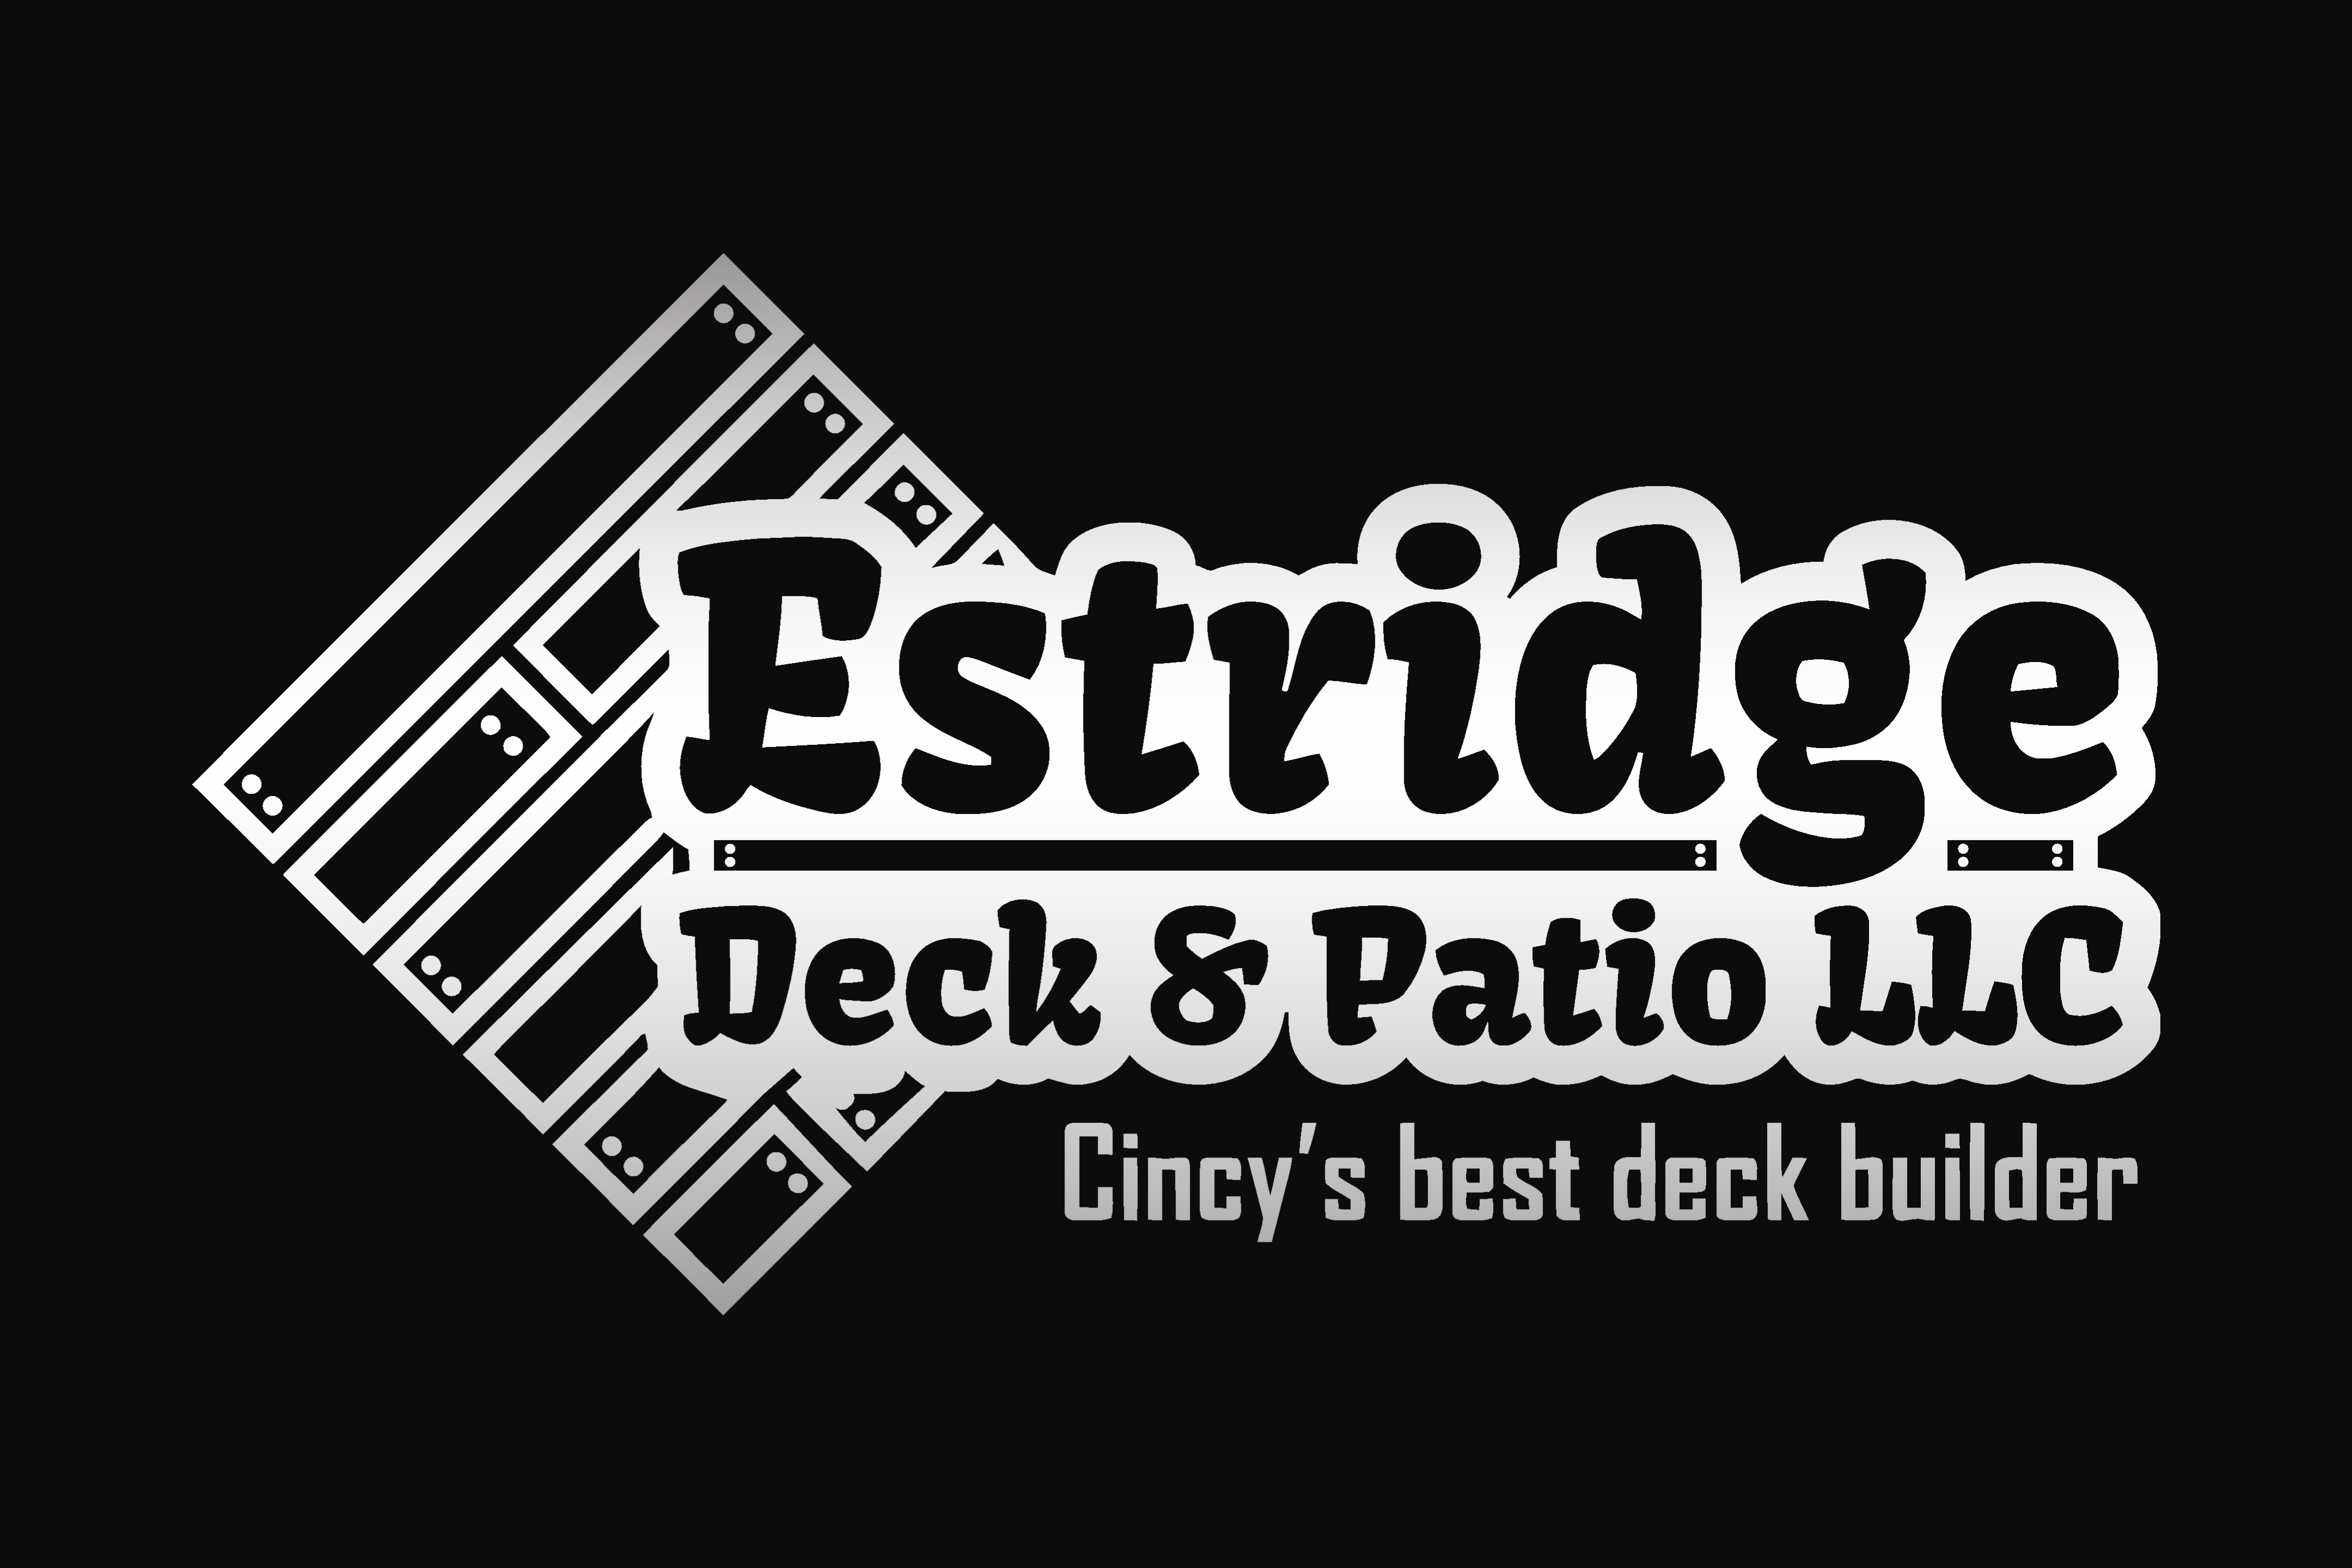 Estridge Deck and Patio is Cincinnati's hometown deck builder and Outdoor Living Company